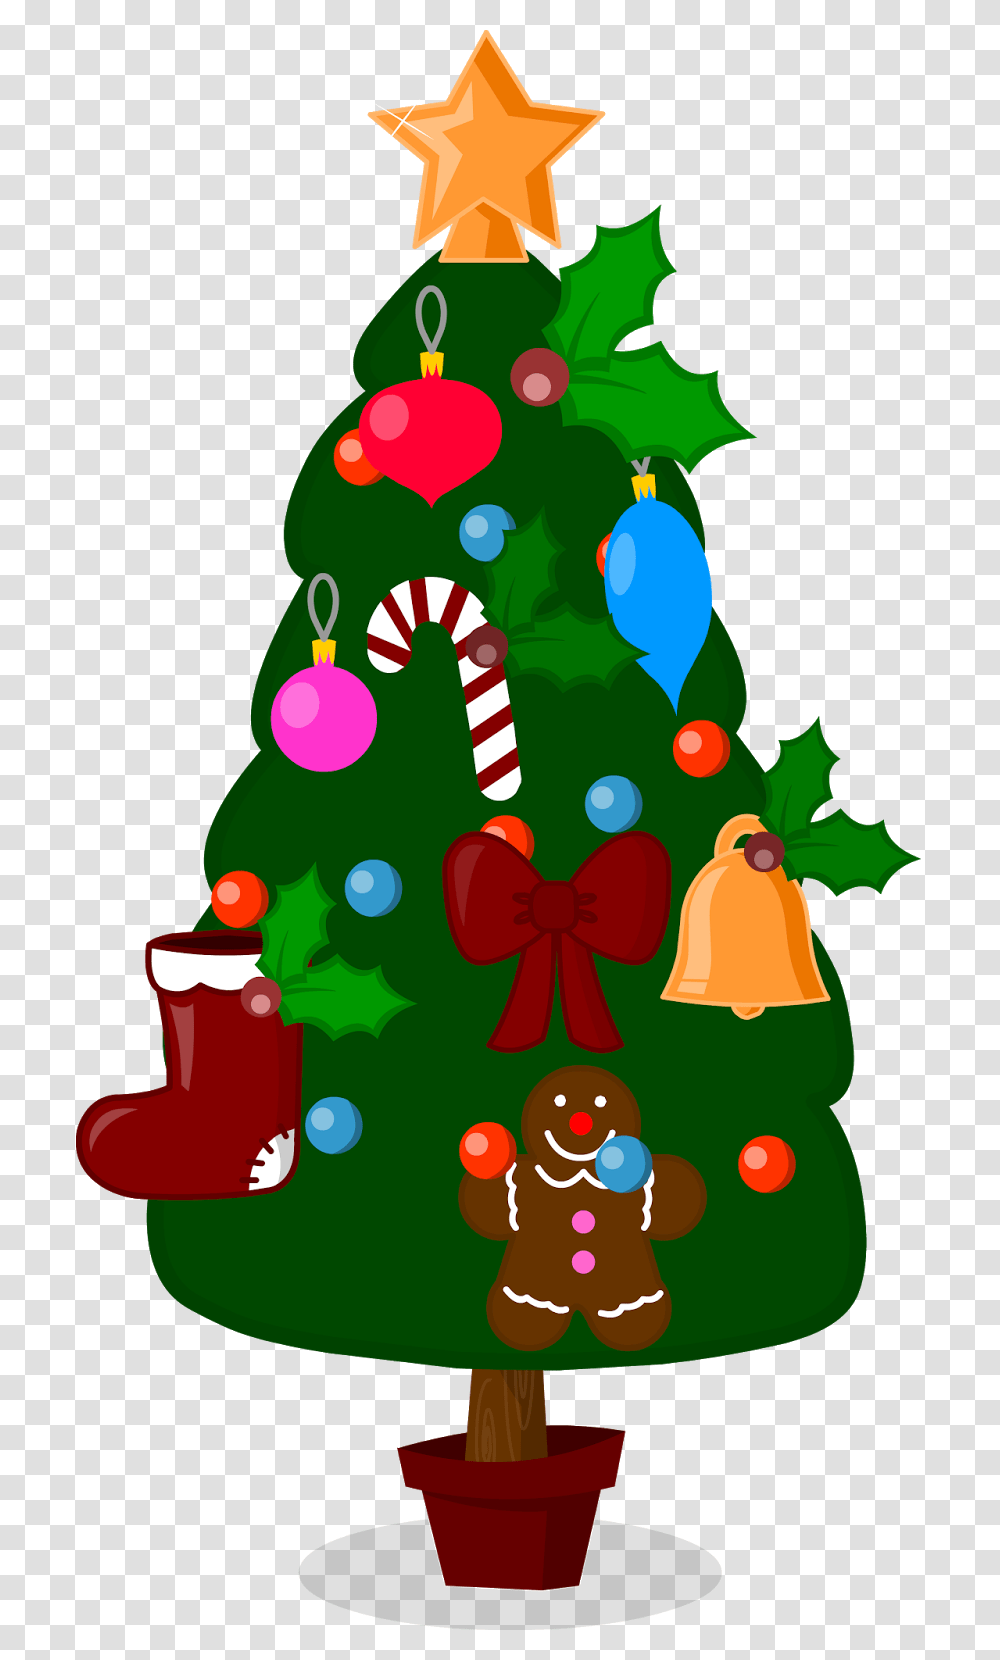 Arbol De Navidad Arbol De Navidad Caricatura, Tree, Plant, Christmas Tree, Ornament Transparent Png